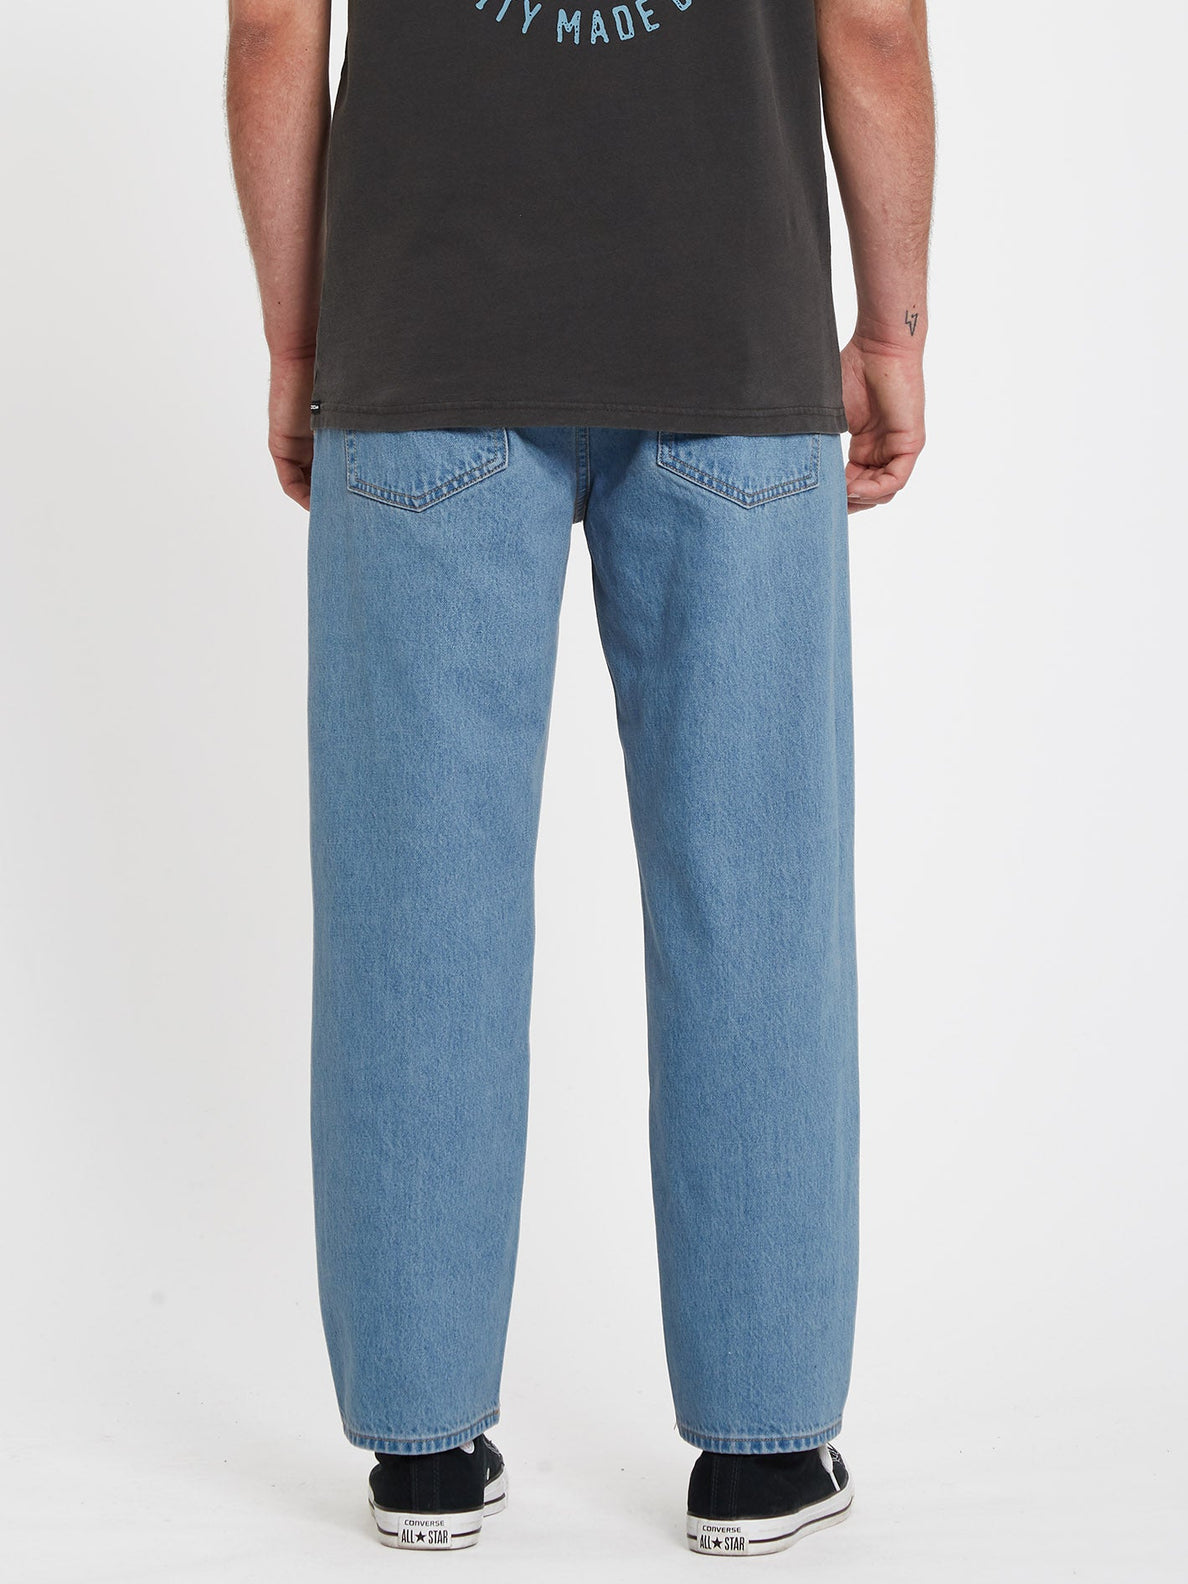 Modown Tapered Jeans - BLUE (A1932102_BLU) [B]